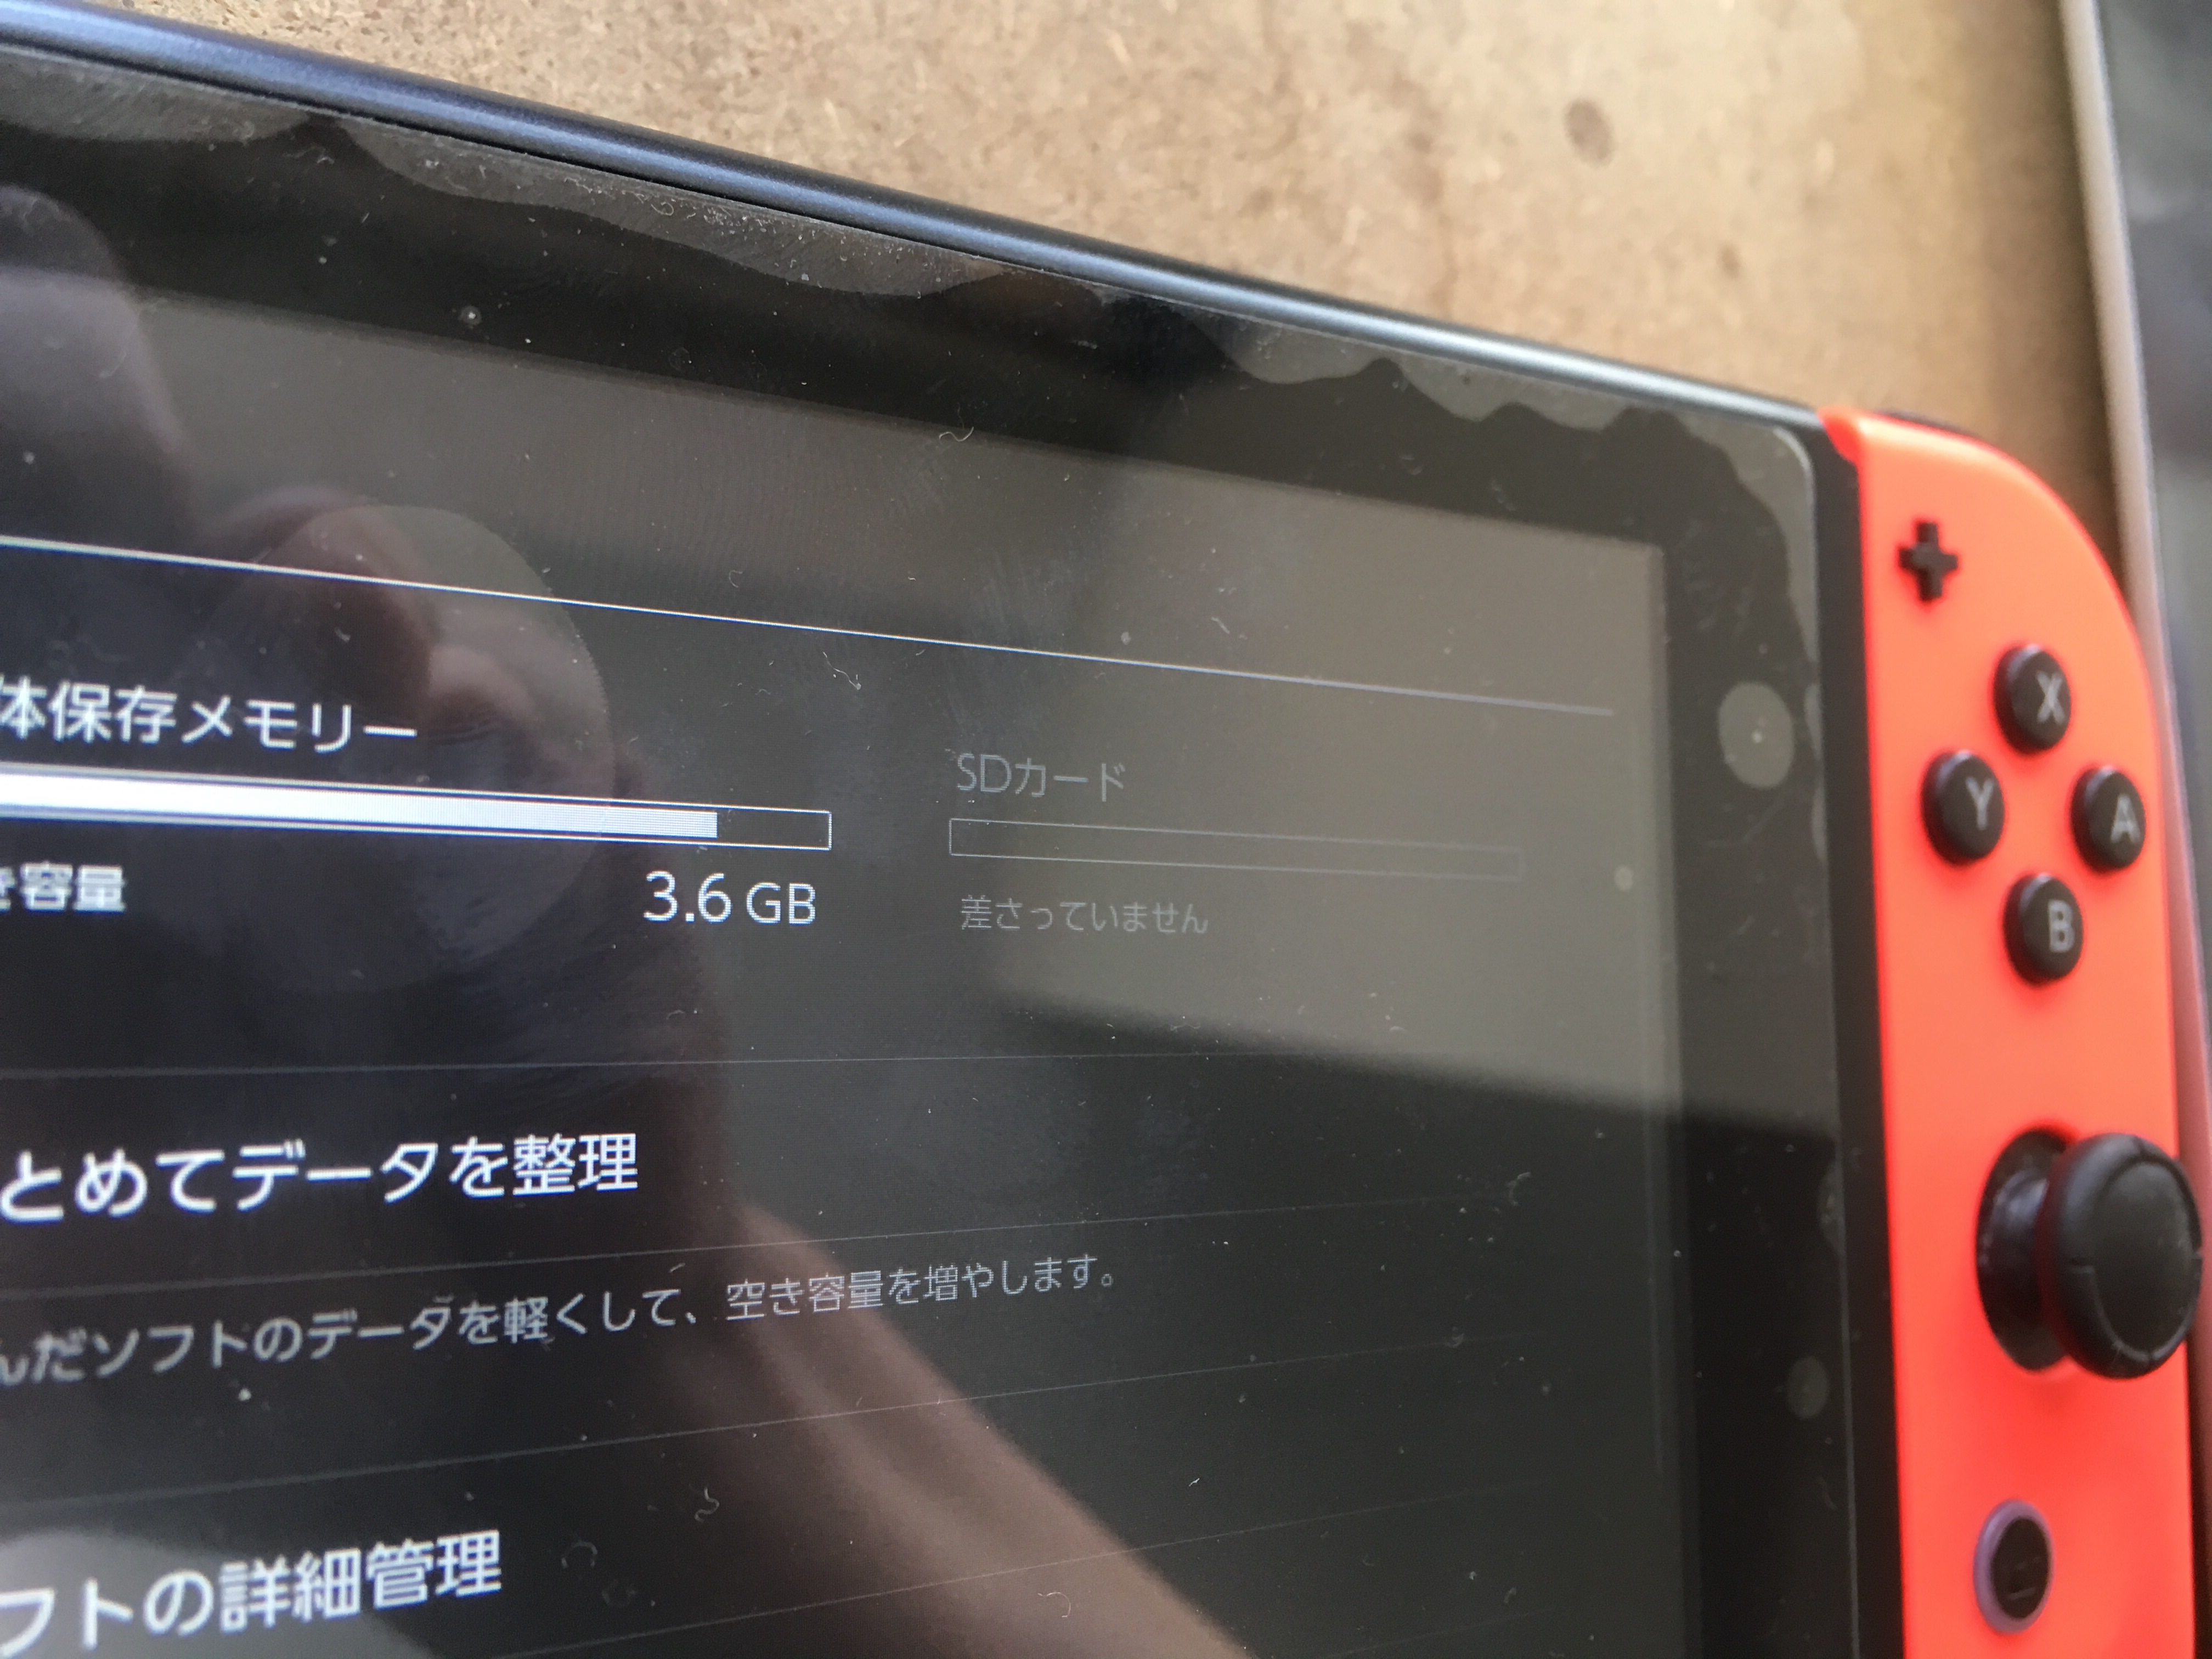 スイッチのsdカードが読み込めない修理ご依頼 Nintendo3ds Switch Psp 修理のゲームホスピタル Nintendo3ds ニンテンドーds Psp 修理